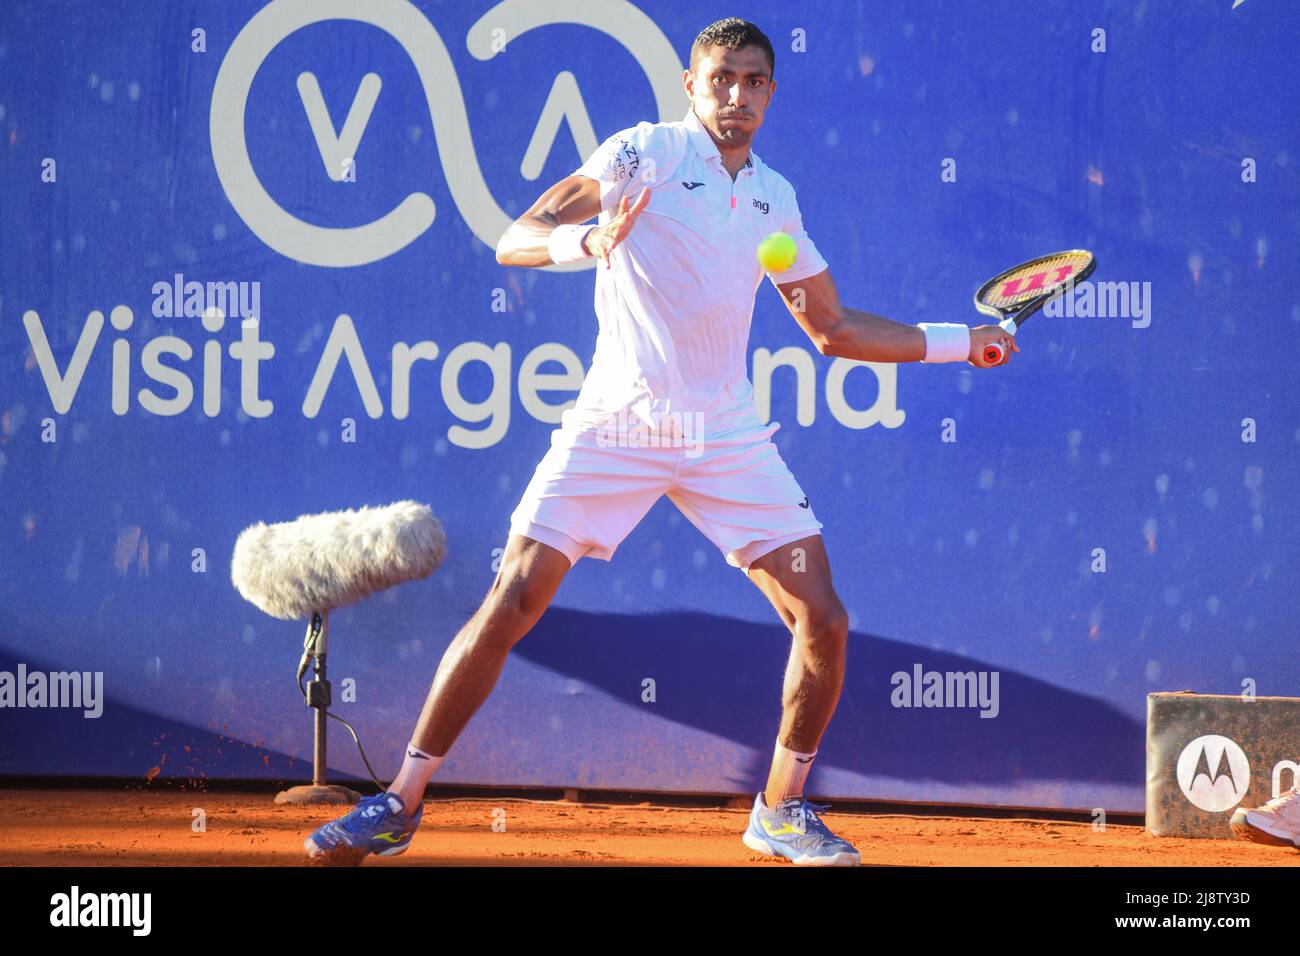 Thiago Monteiro (Brazil). Argentina Open 2022 Stock Photo